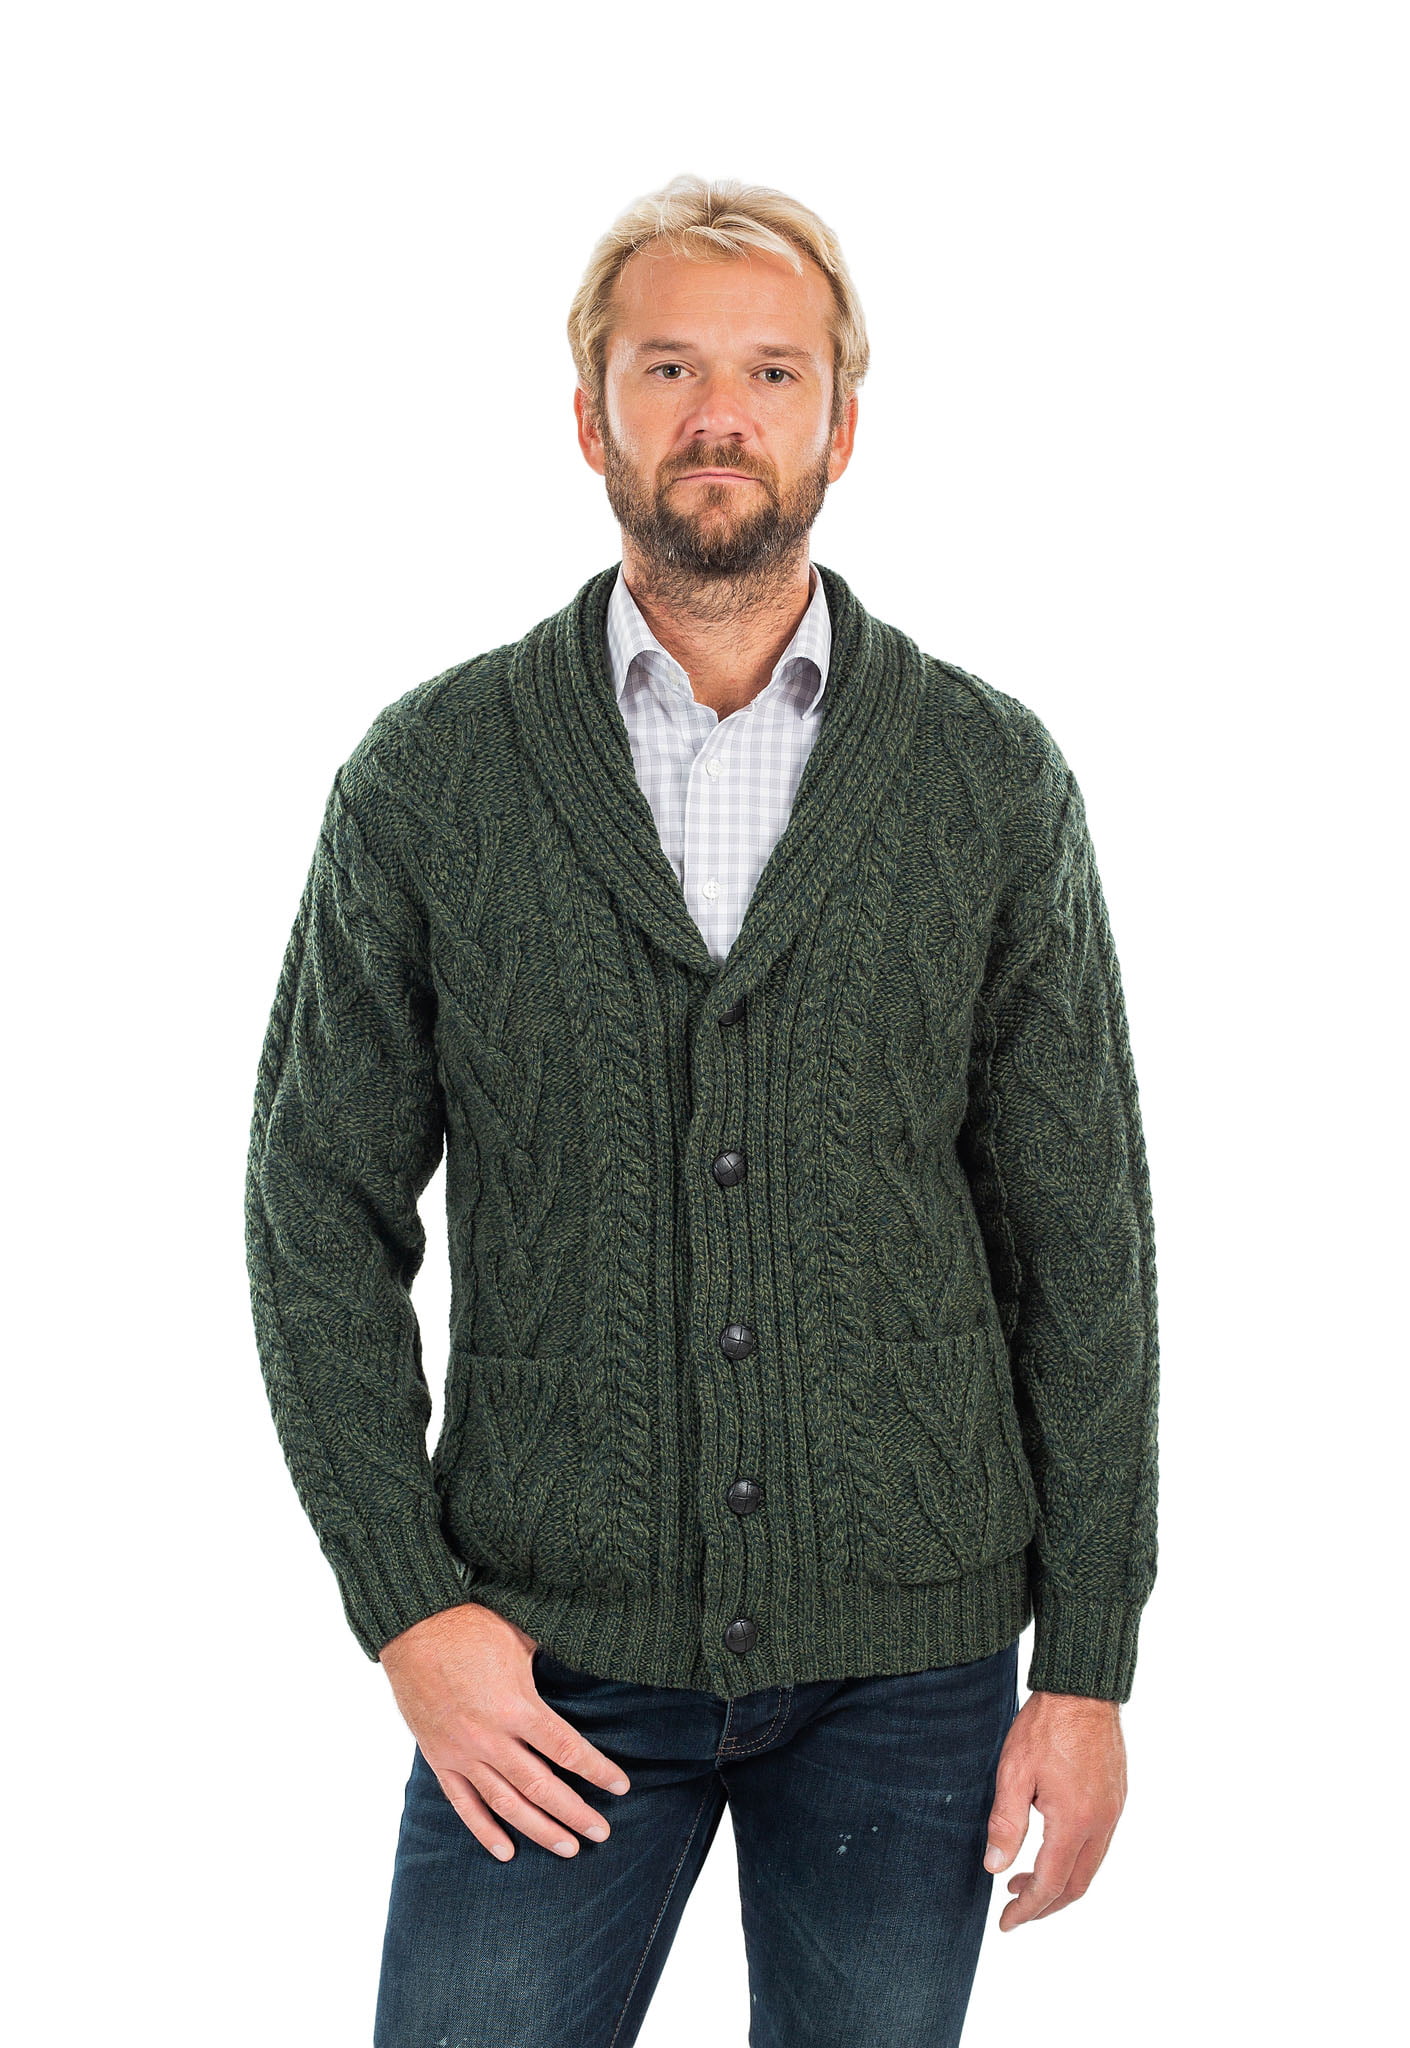 SAOL - SAOL Irish Cardigan Sweater for Men 100% Merino Wool Aran Cable ...